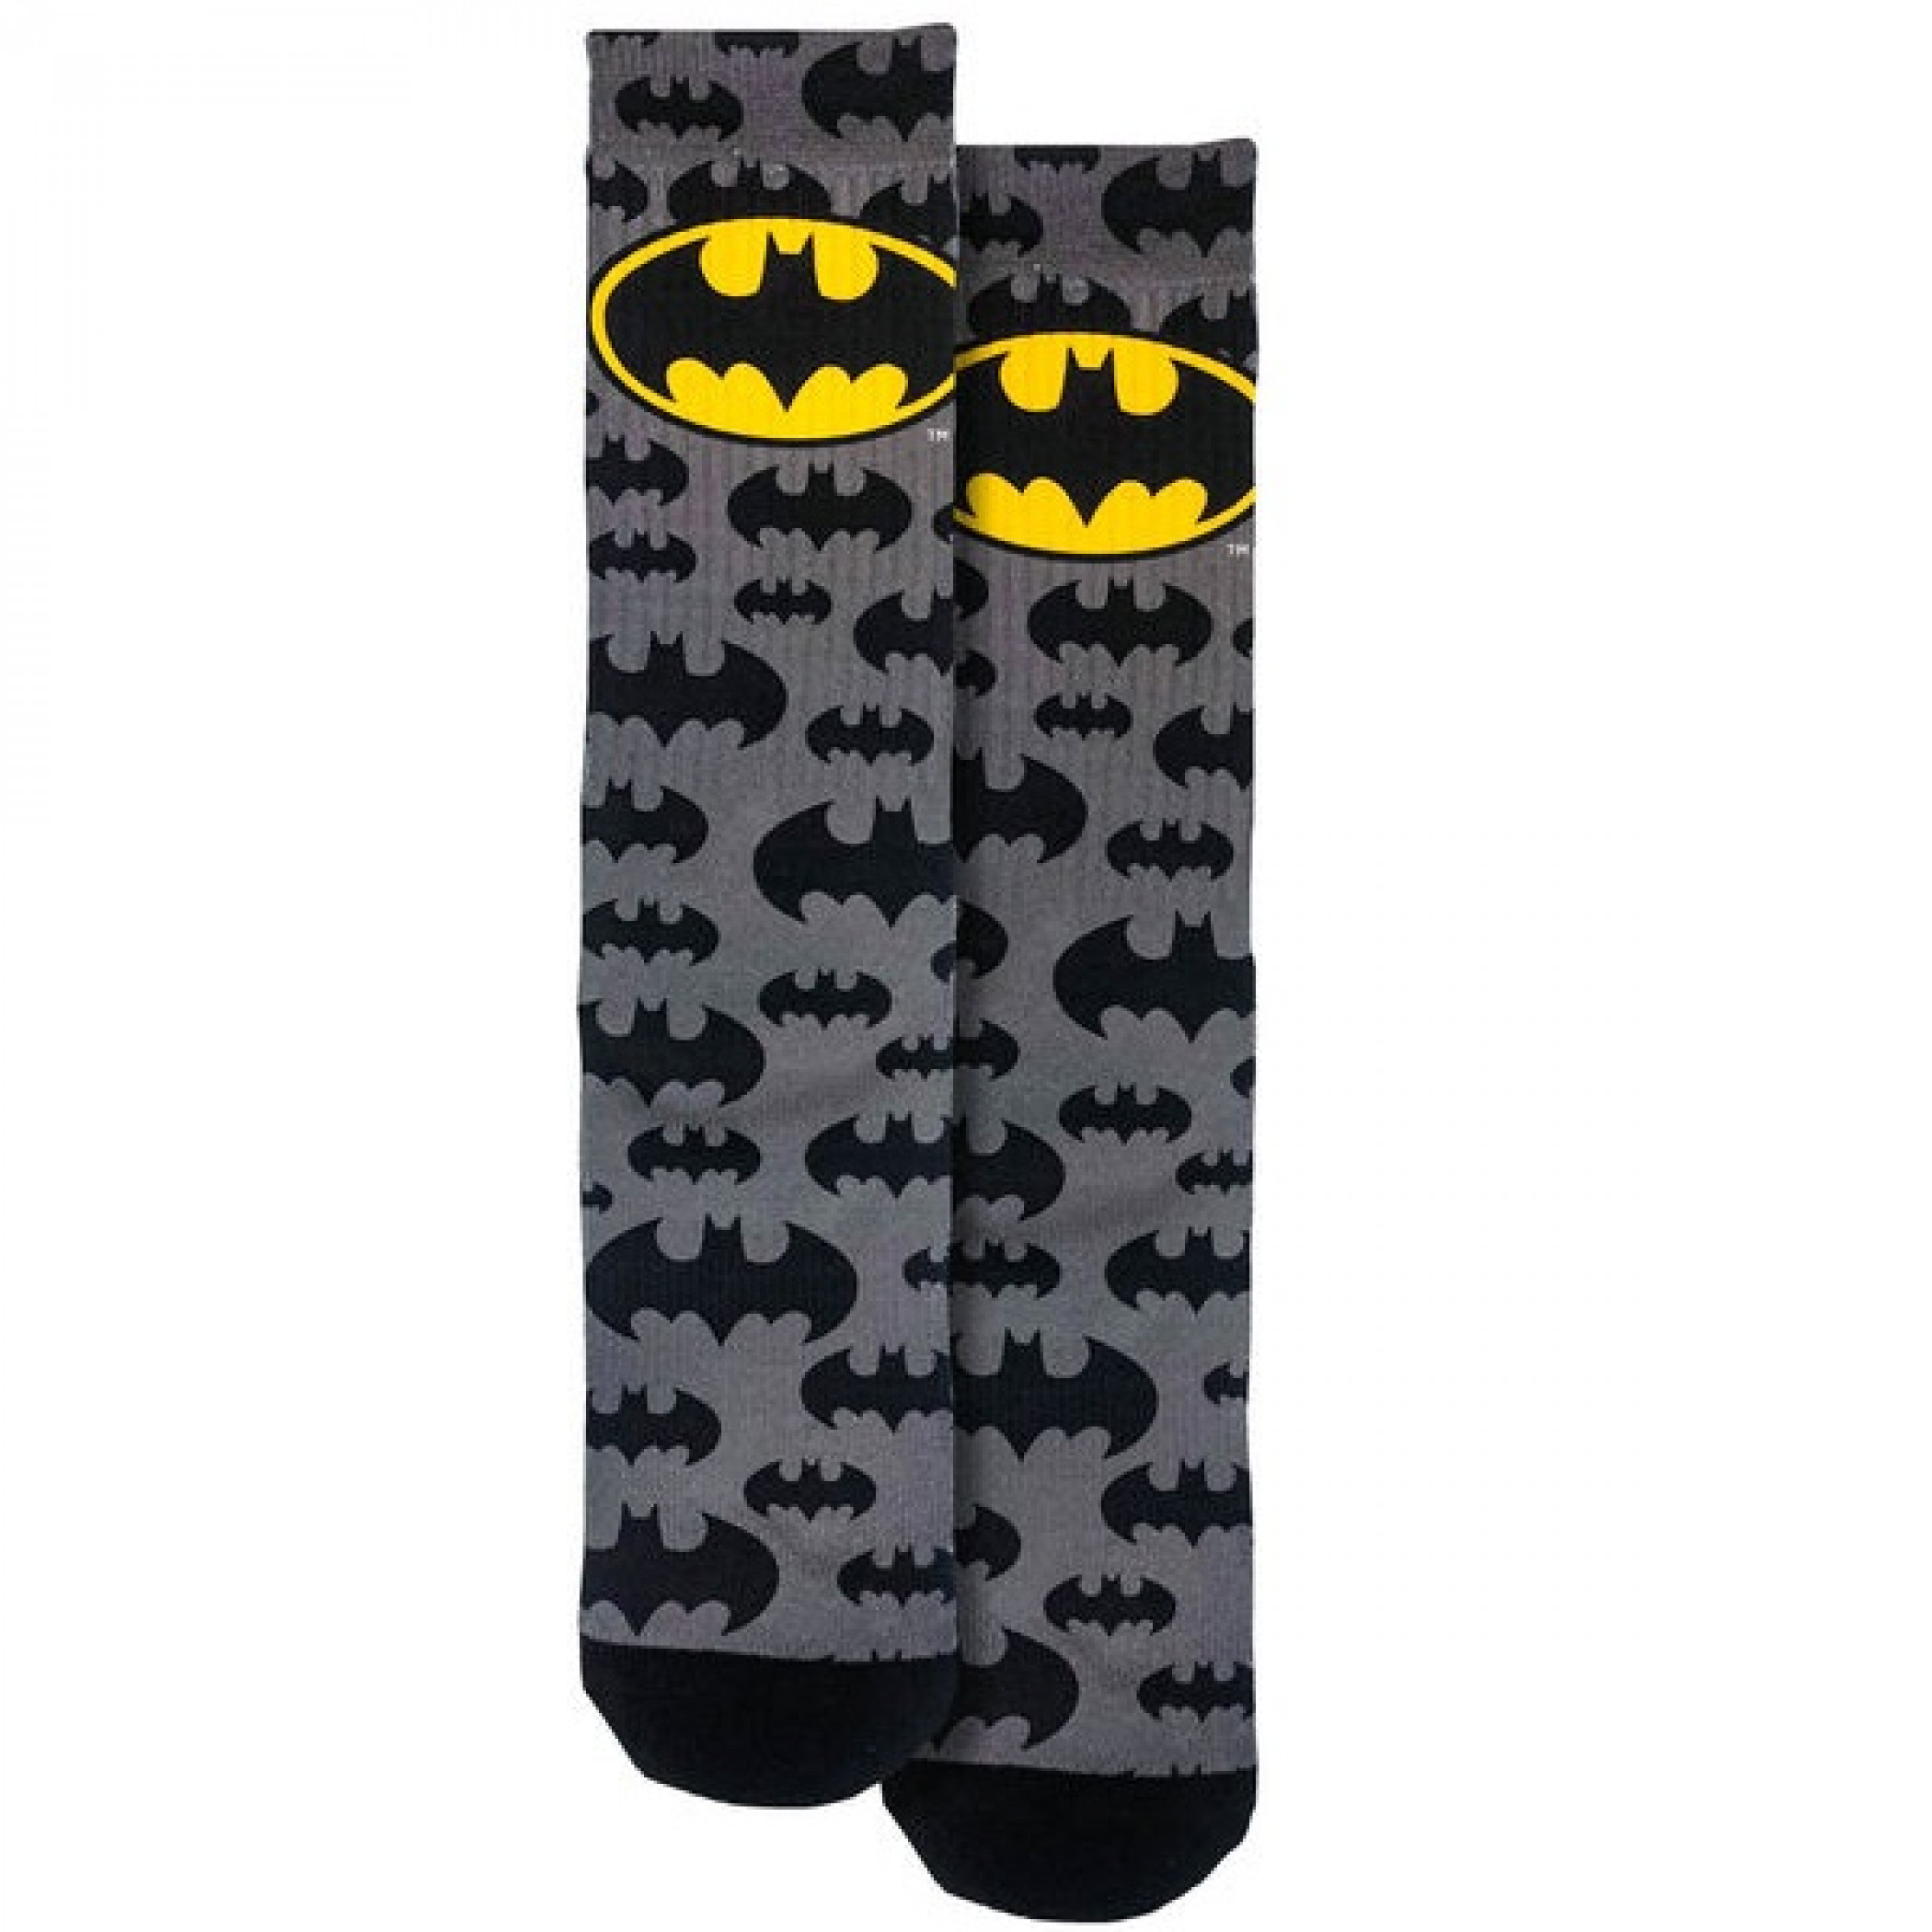 Batman Logo and Symbols All Over Crew Socks